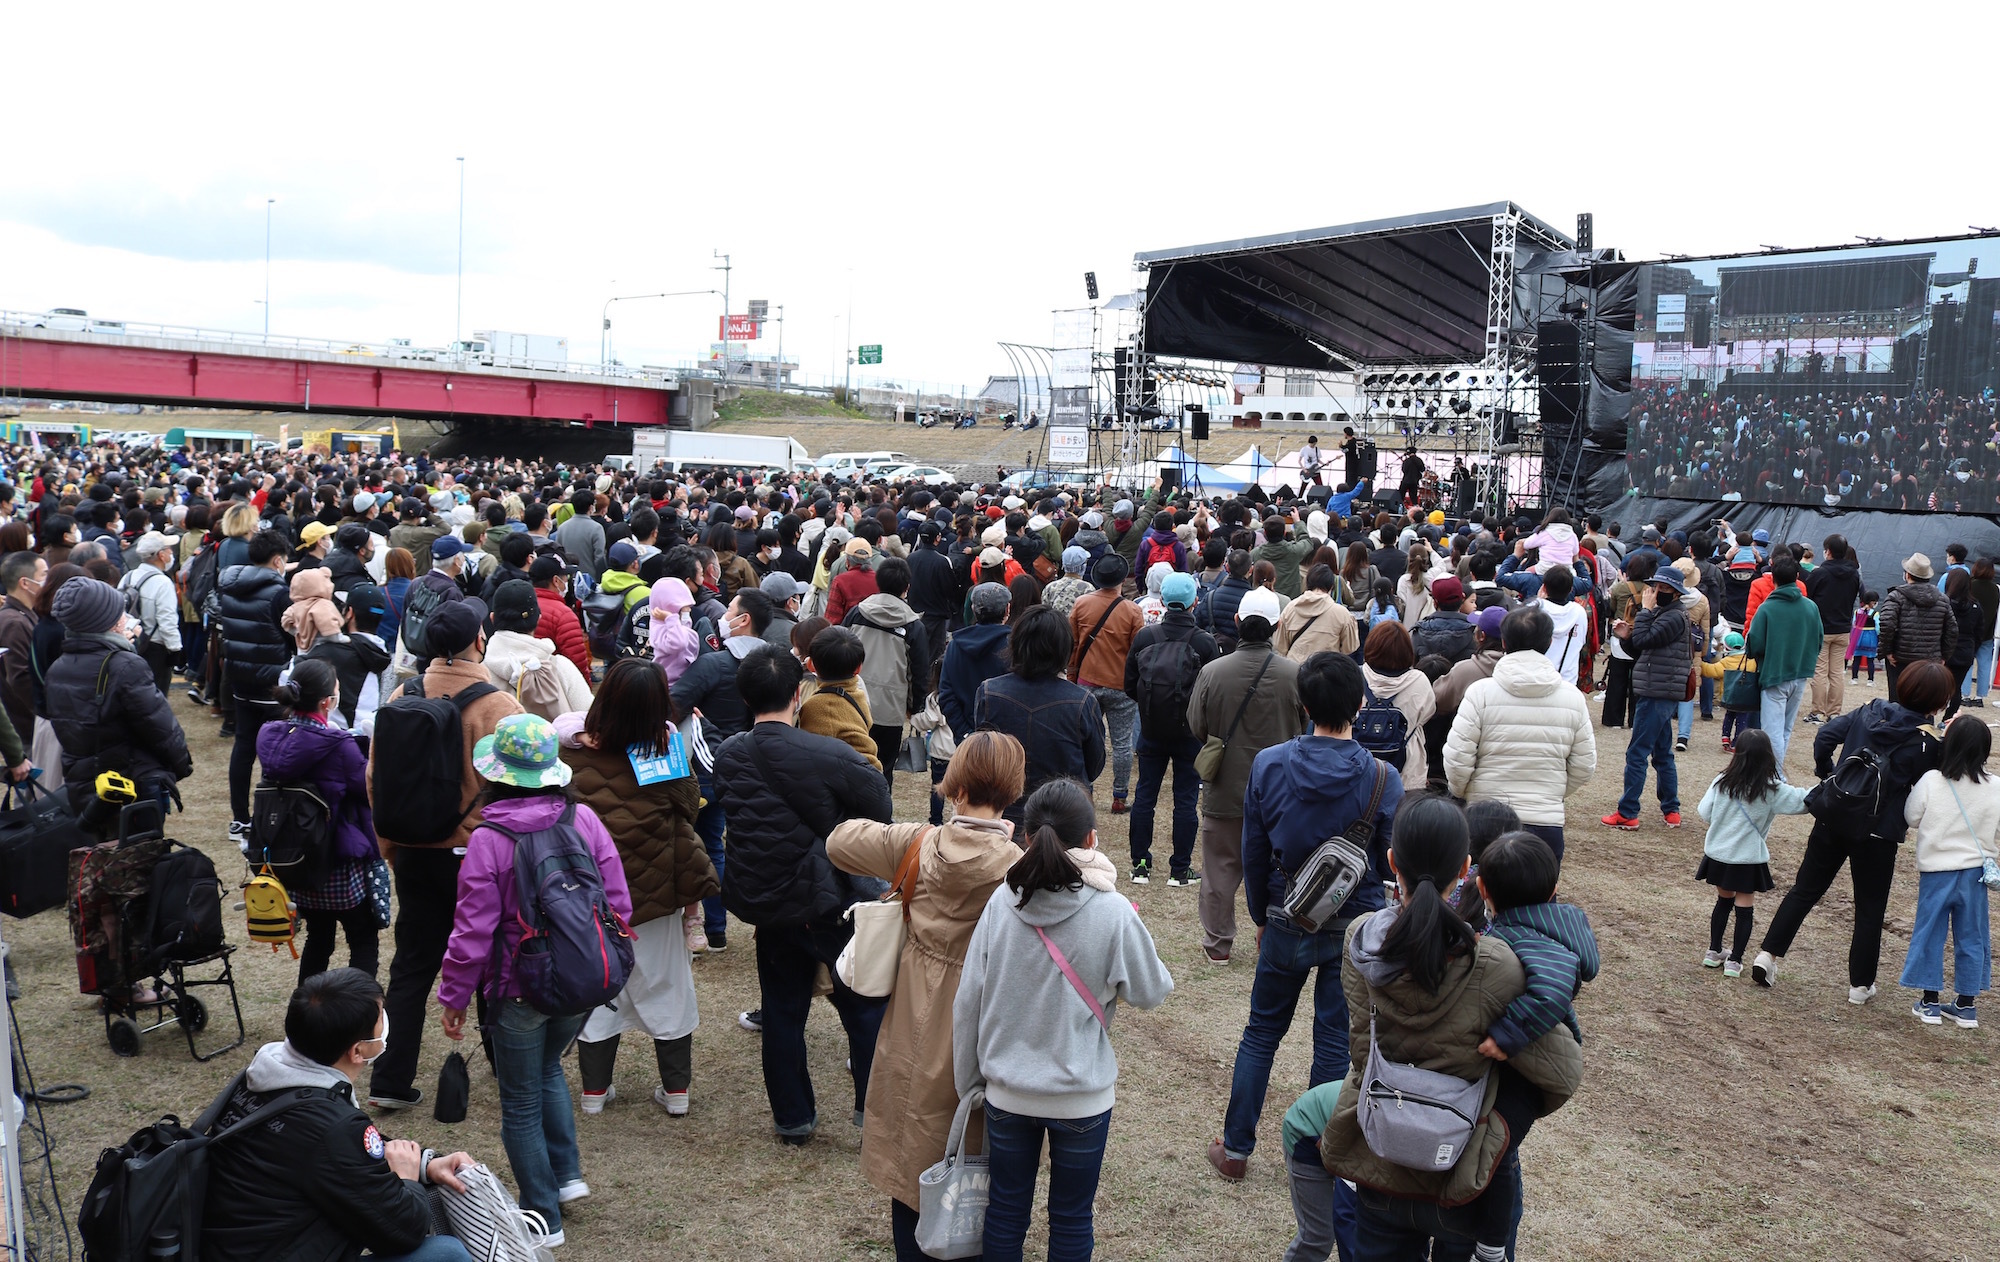 第一回開催の来場者は1万人超え！兵庫県加古川市の
「第二回KAKOGAWA MUSIC FES(カコフェス)」開催に向けた
クラウドファンディングを8月14日(日)まで実施